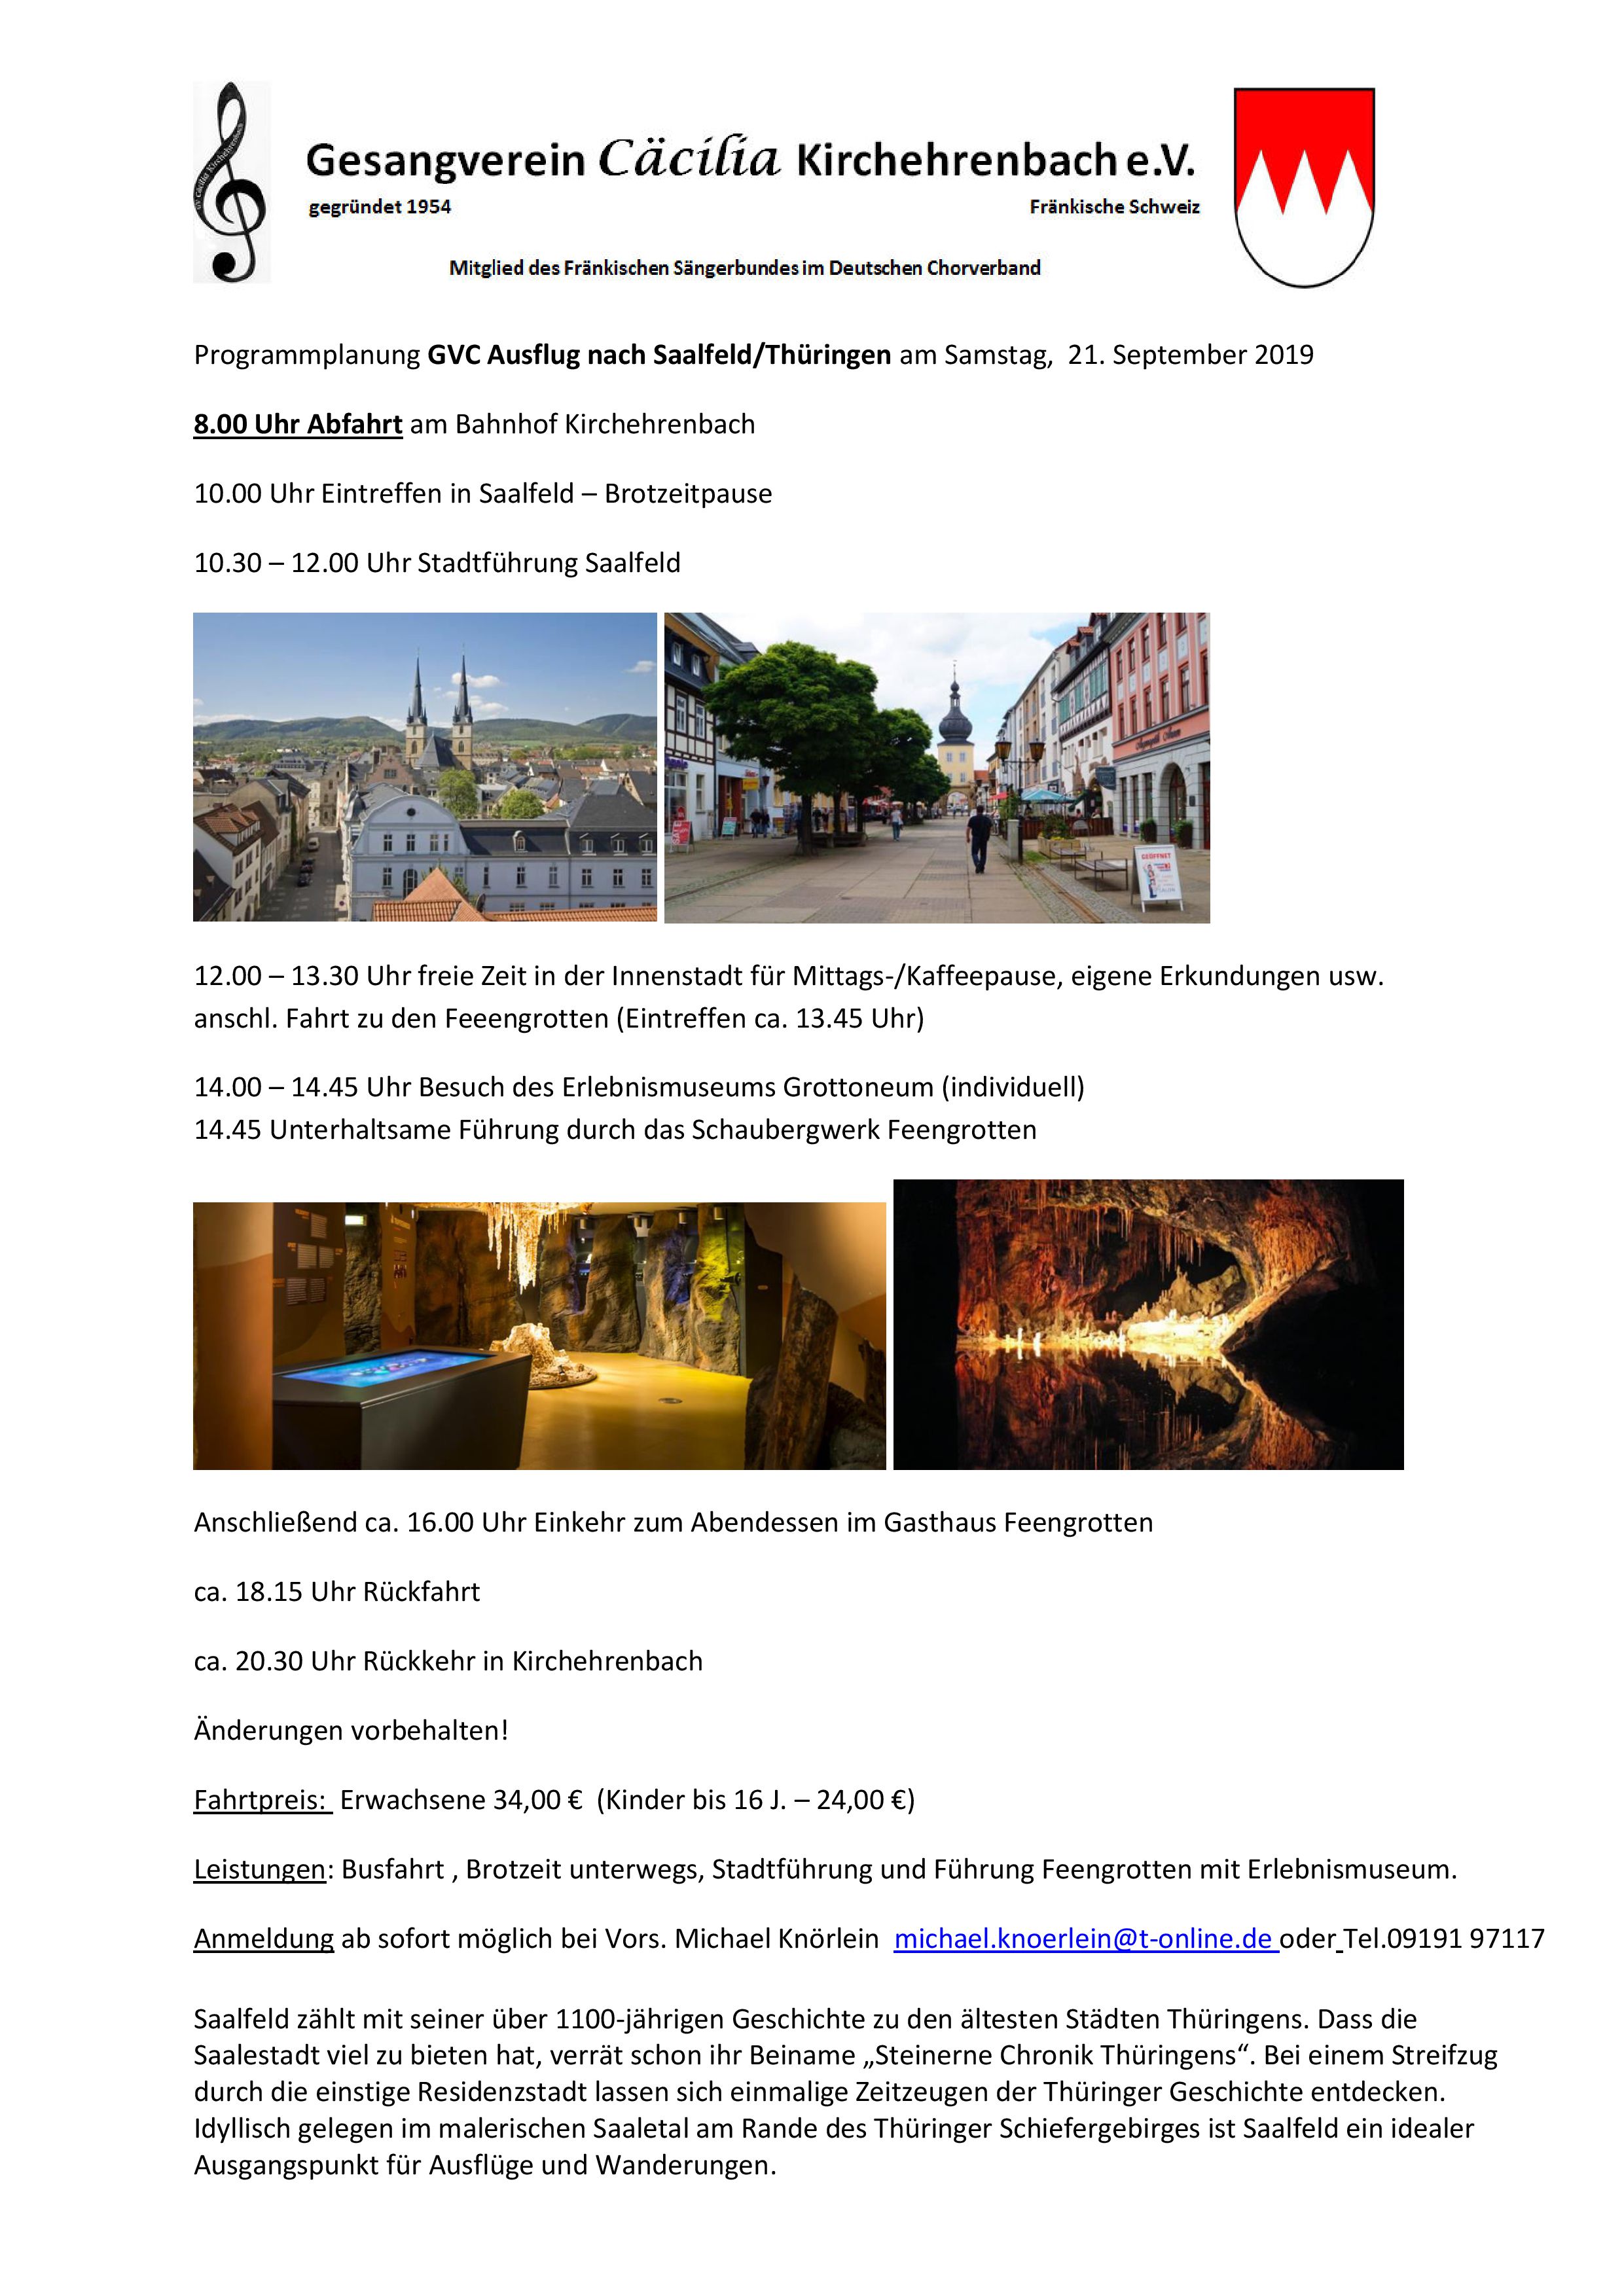 Programmplanung GVC Ausflug nach Saalfeld 21.09.2019